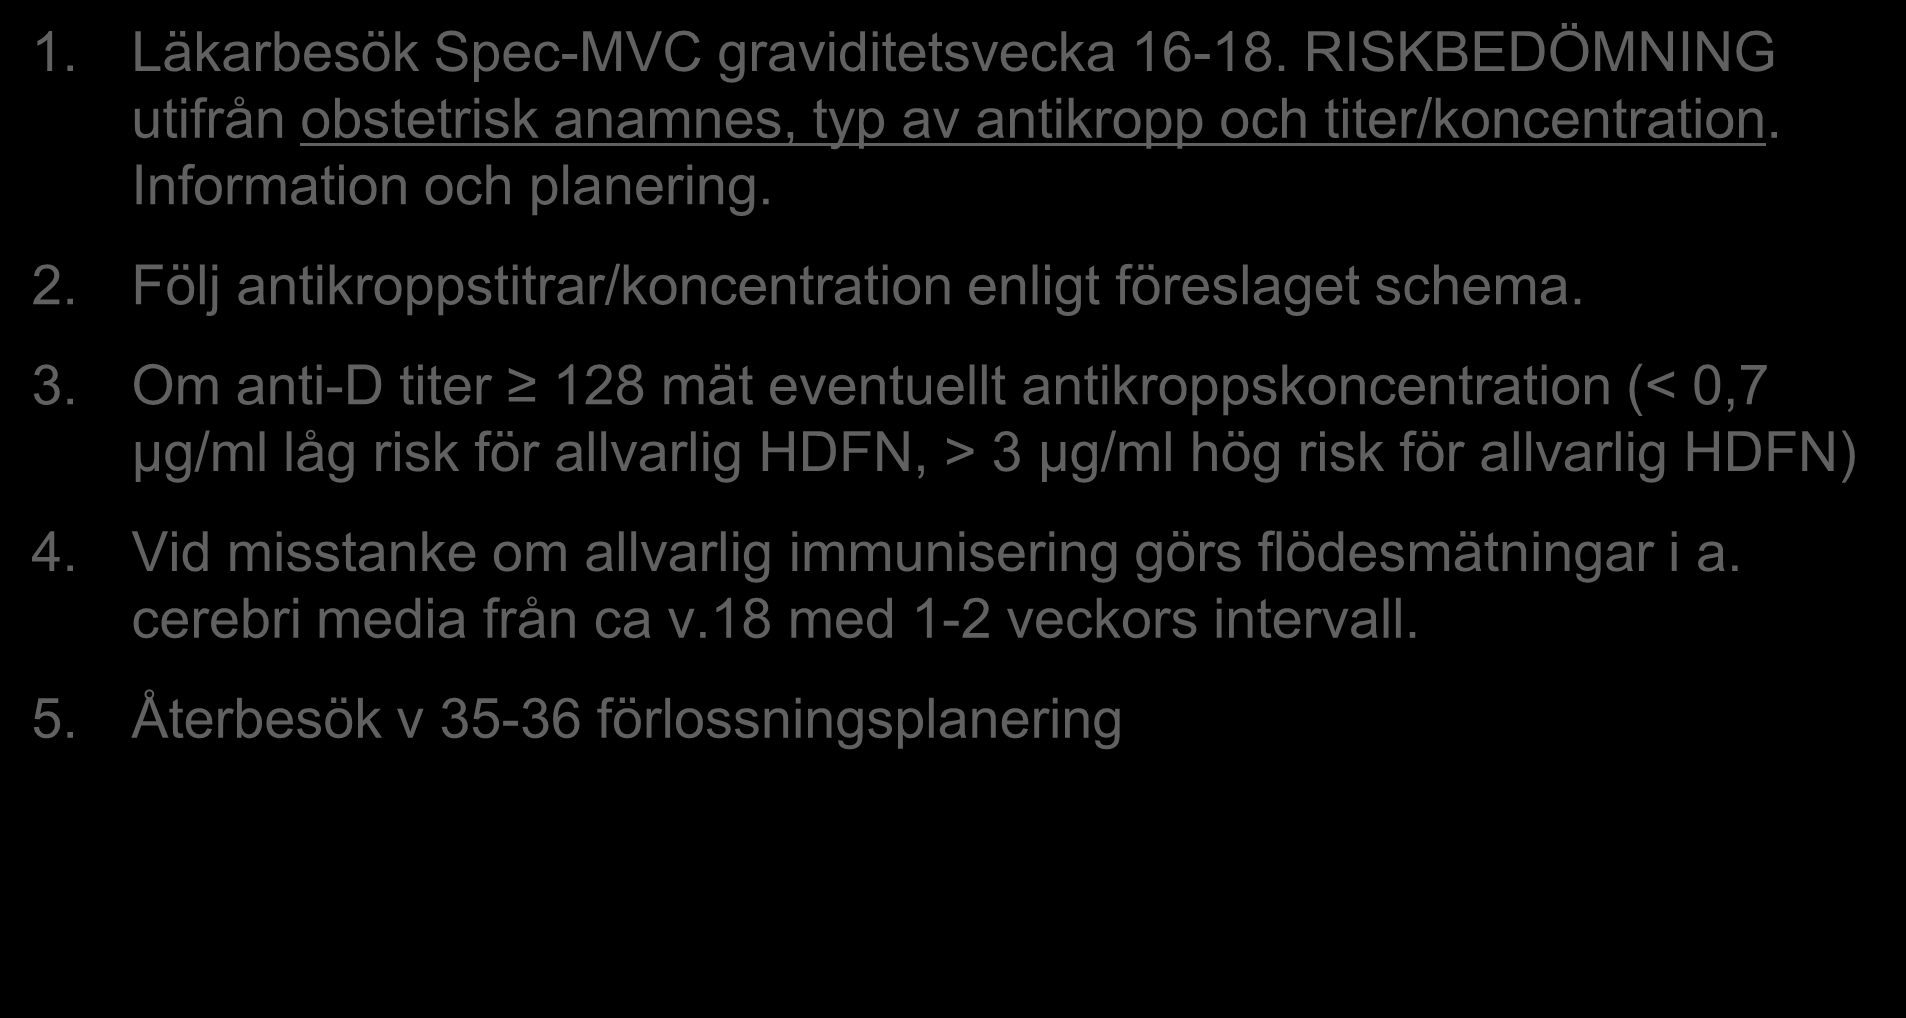 Antenatal övervakning 1. Läkarbesök Spec-MVC graviditetsvecka 16-18. RISKBEDÖMNING utifrån obstetrisk anamnes, typ av antikropp och titer/koncentration. Information och planering. 2.